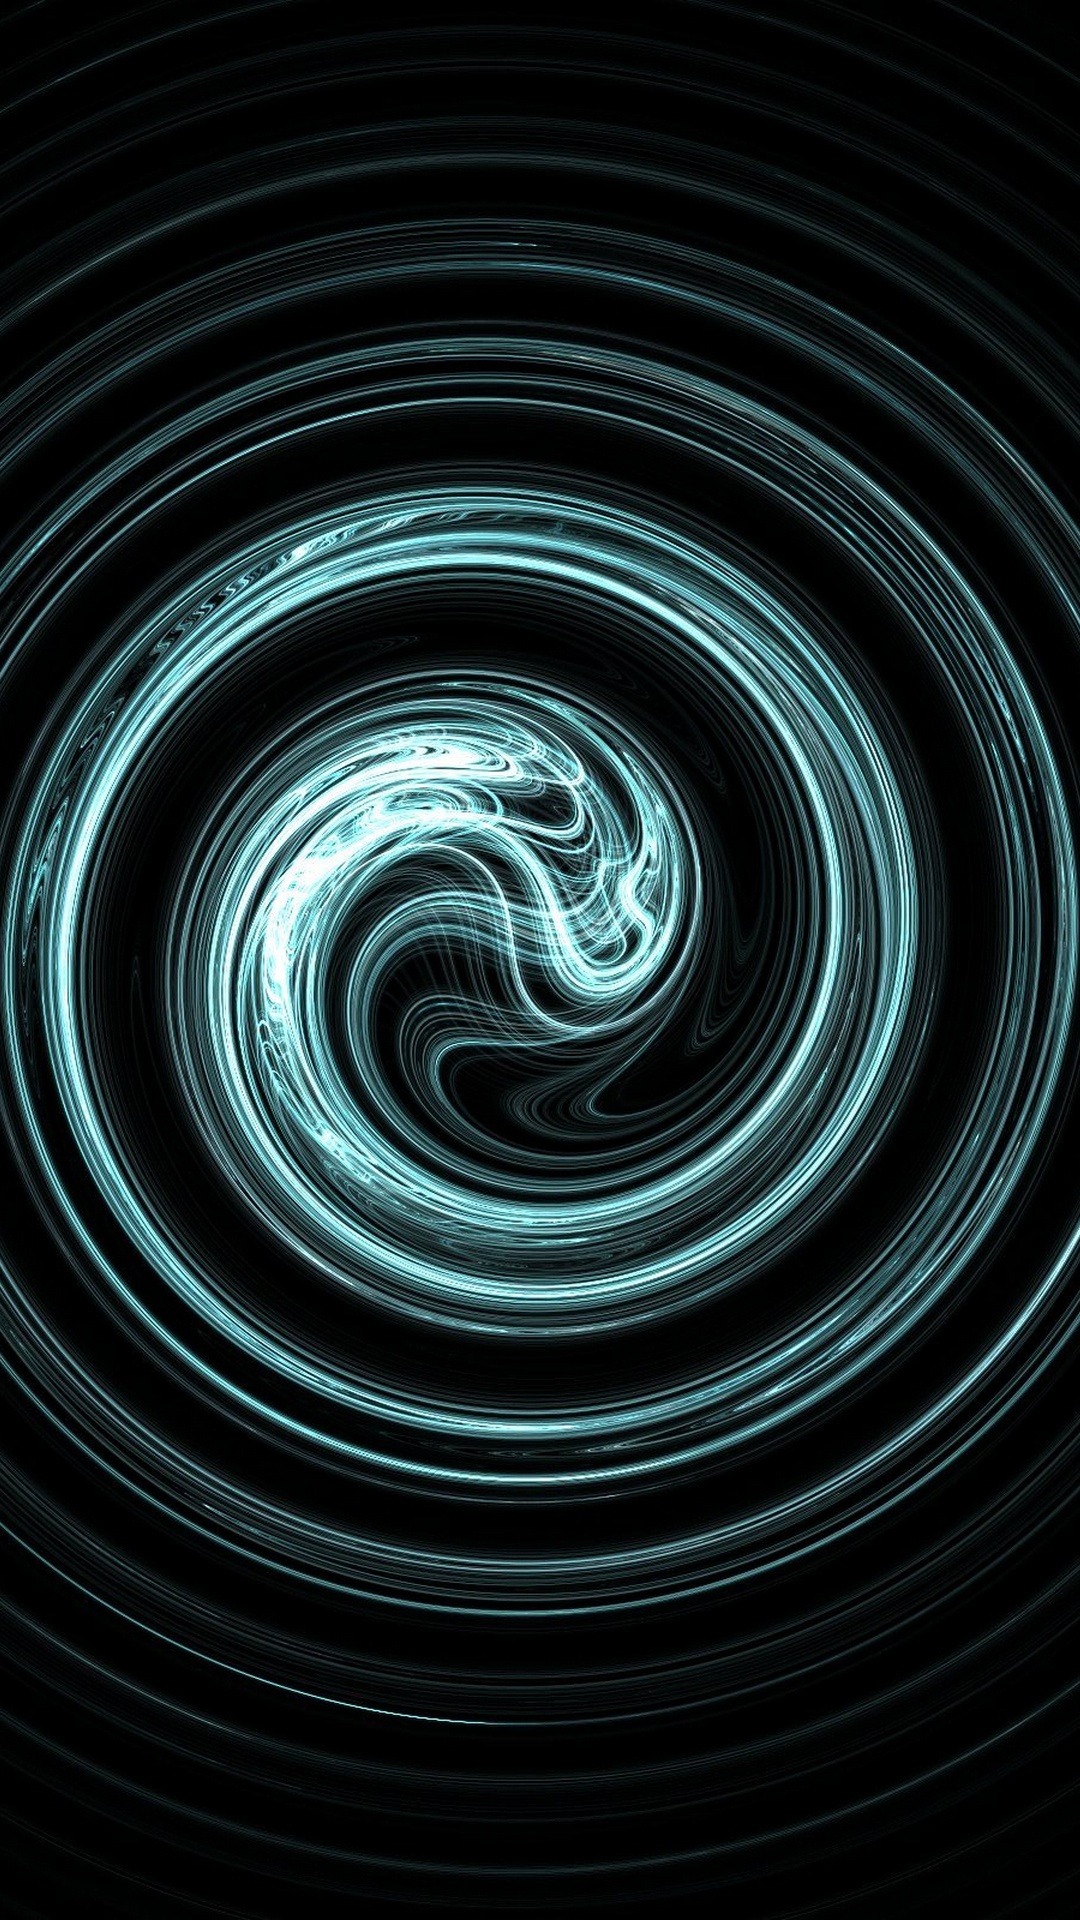 Hình nền đen Misty spiral cho Insignia 5X sẽ khiến cho màn hình điện thoại của bạn trở nên huyền bí và cổ điển hơn. Hiệu ứng xoắn ốc mờ tạo ra một bầu không khí bí ẩn và huyền bí, đôi khi còn giống như chúng ta đang nhìn vào một cánh rừng sâu thẳm.